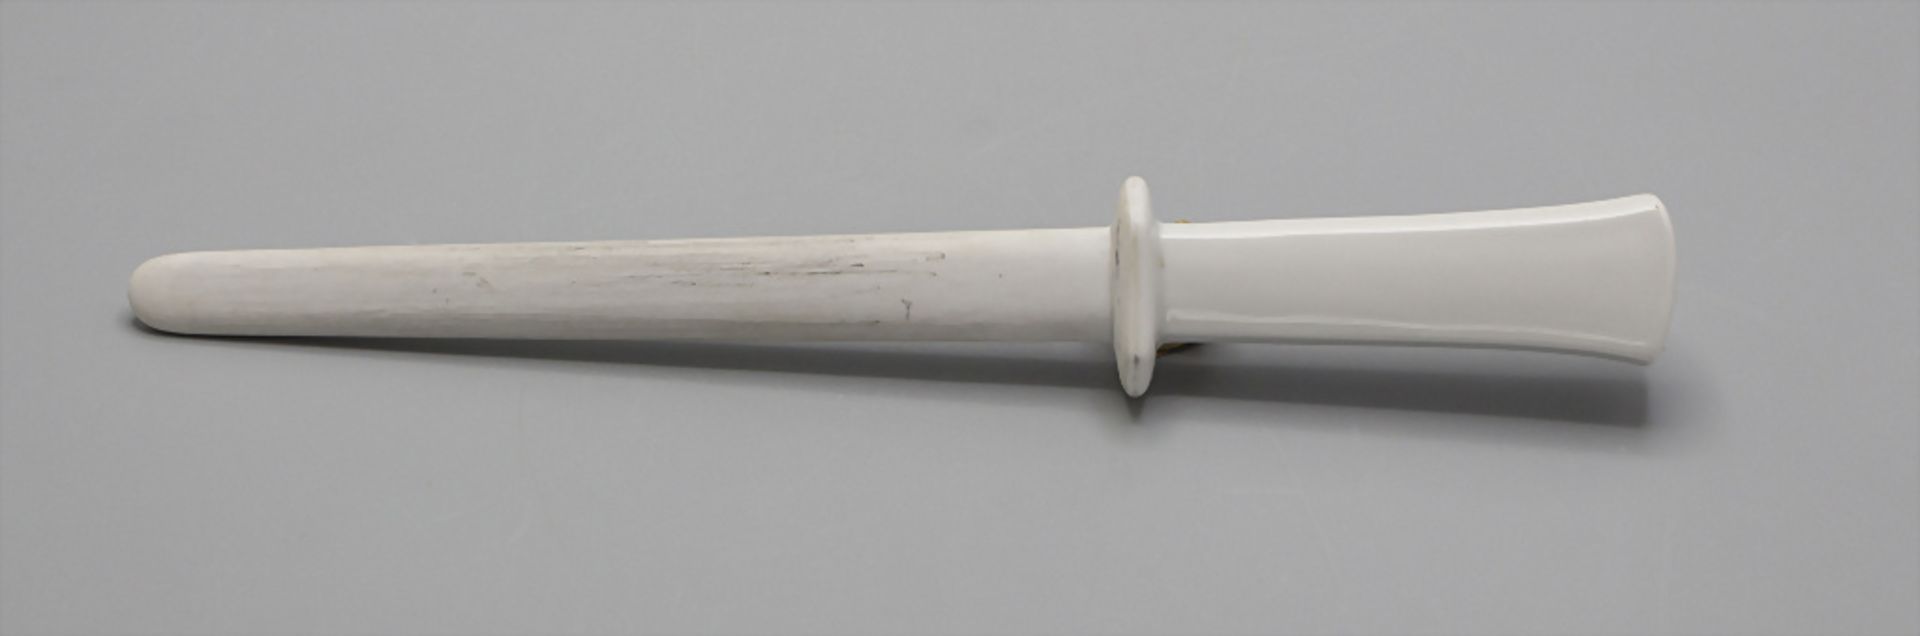 Messerschleifer / A knife sharpener, Meissen, Mitte 20. Jh. - Image 2 of 3